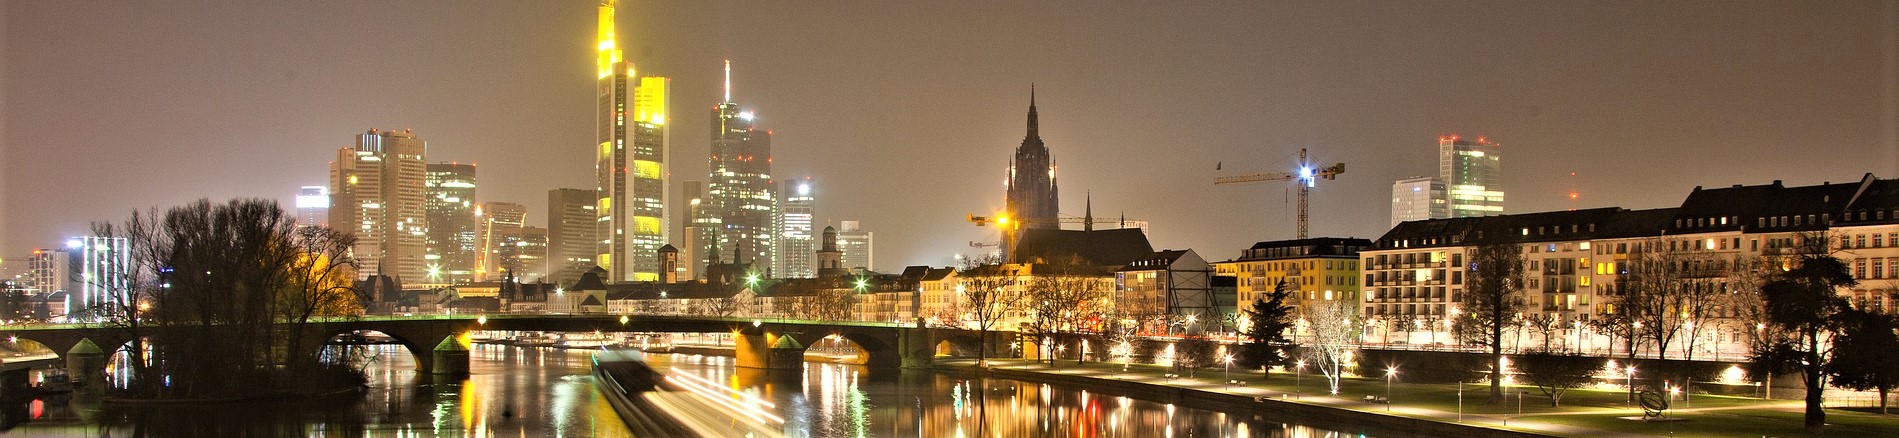 Frankfurt SPOT|フランクフルト 観光スポット